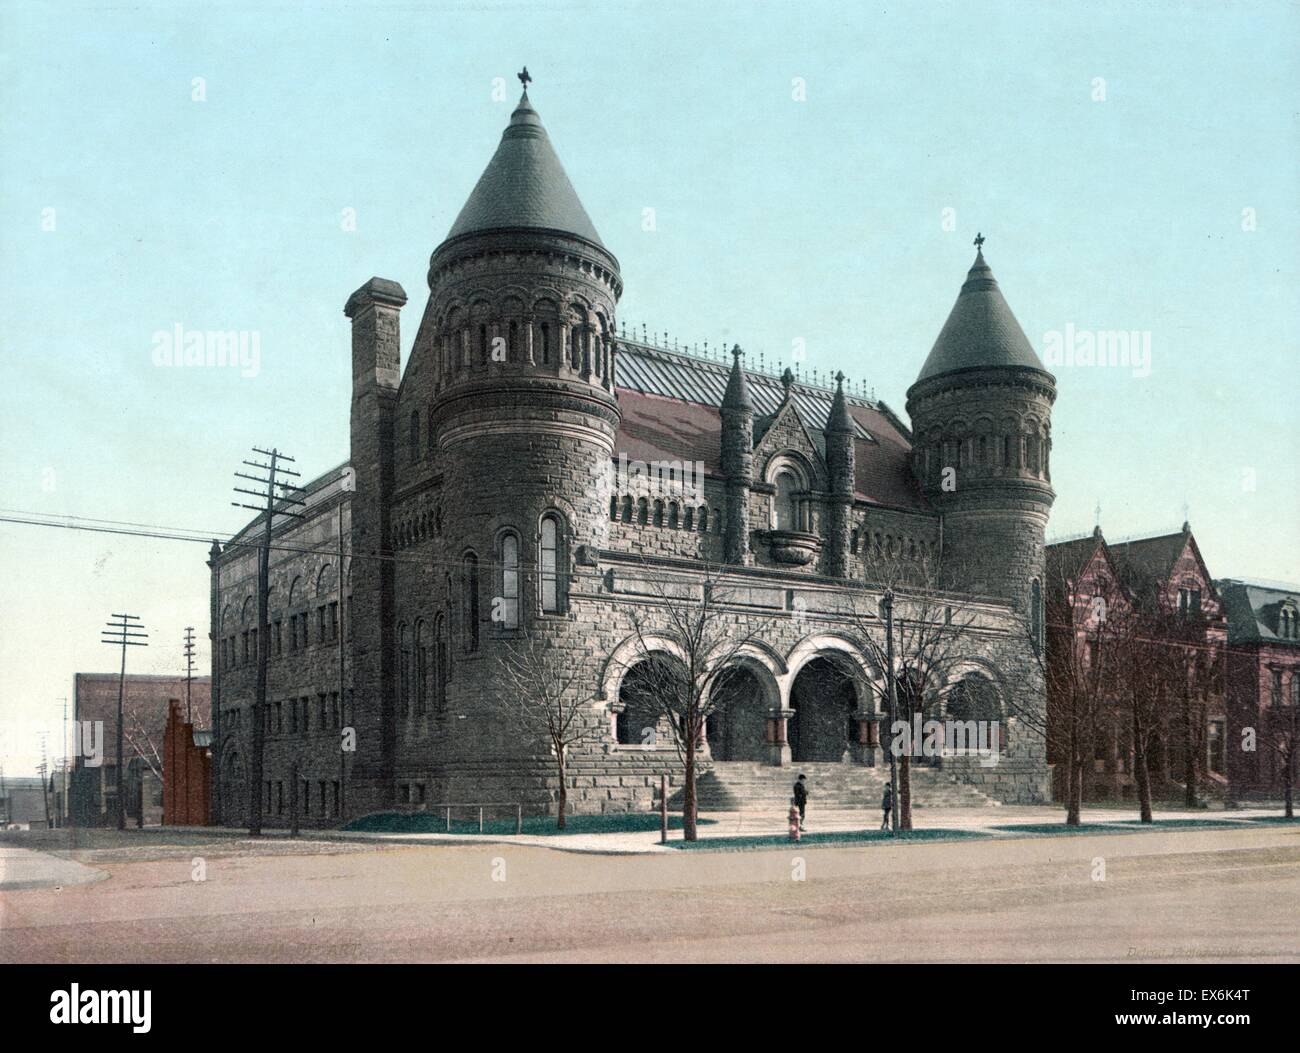 Farbfoto des ursprünglichen Detroit Museum of Art. Das Museum wurde nach 40 Jahren das Detroit Institute of Arts. Datiert 1900 Stockfoto